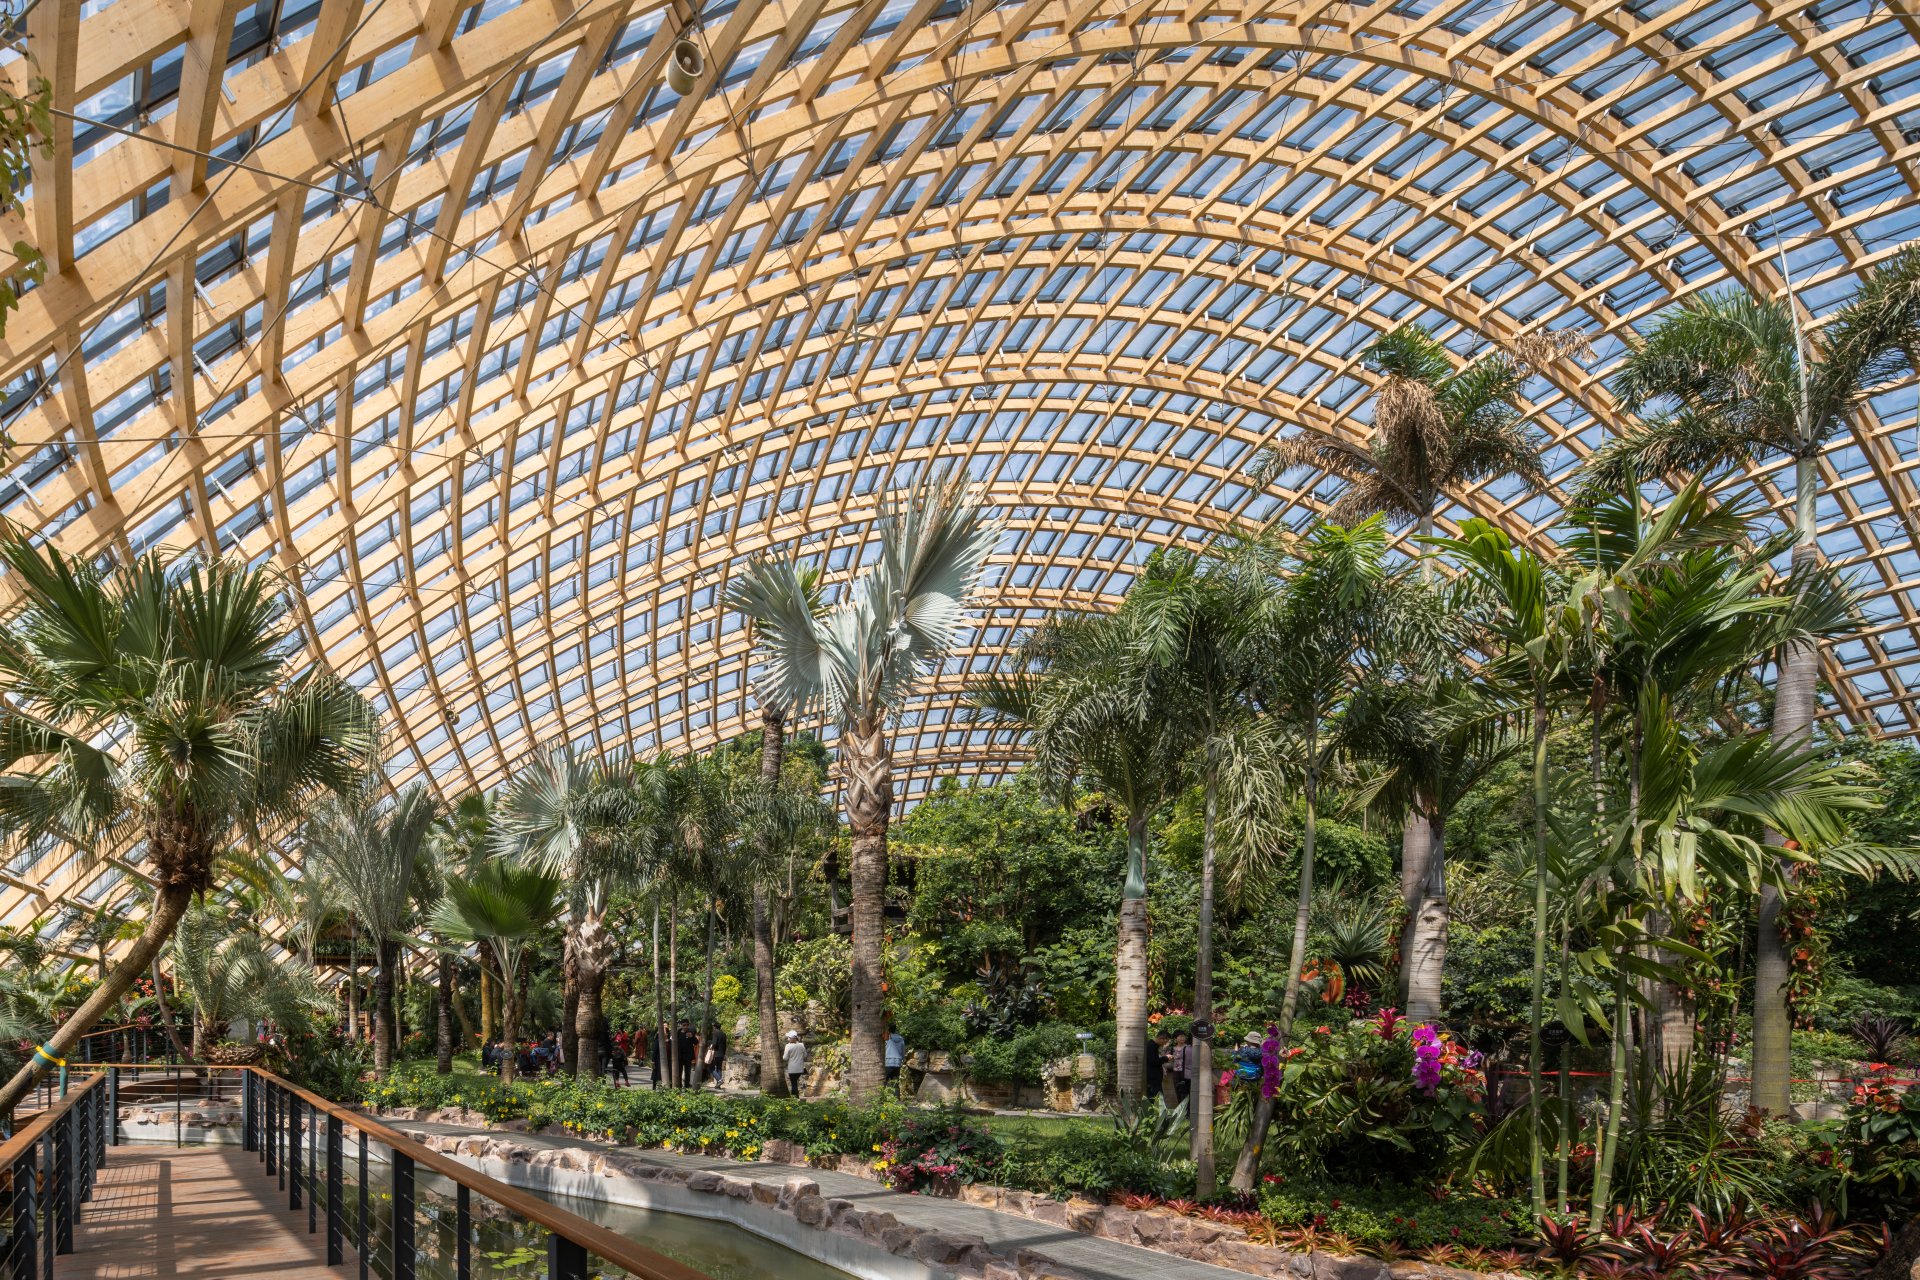 Interior of Tropical Dome, Taiyuan Botanical Garden